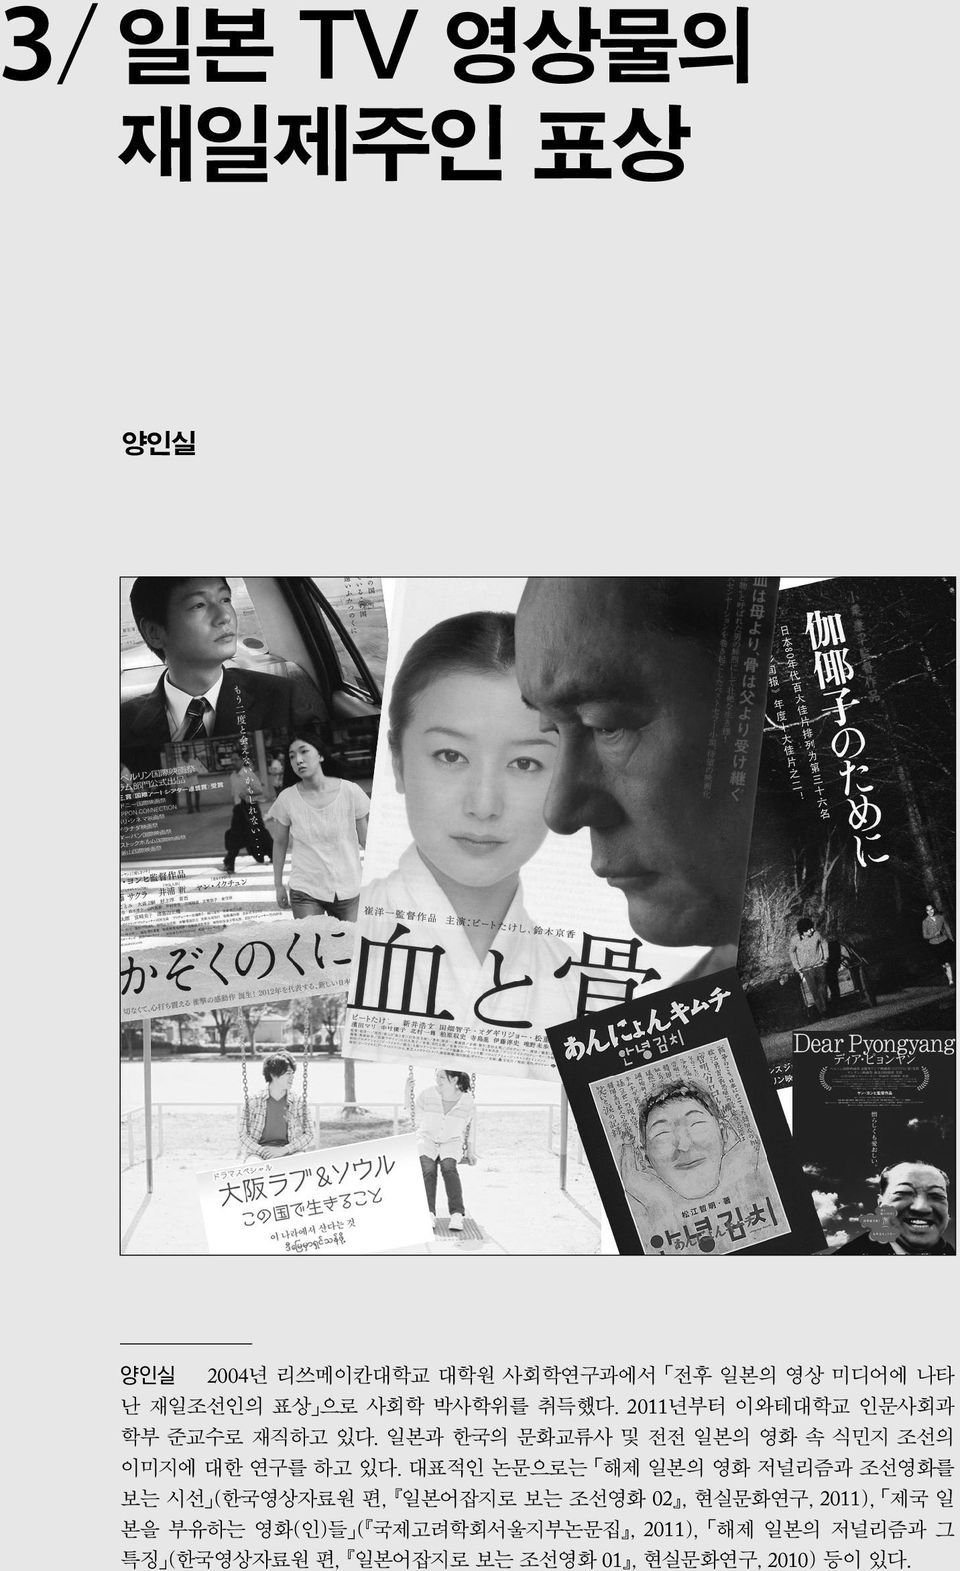 일본과 한국의 문화교류사 및 전전 일본의 영화 속 식민지 조선의 이미지에 대한 연구를 하고 있다.